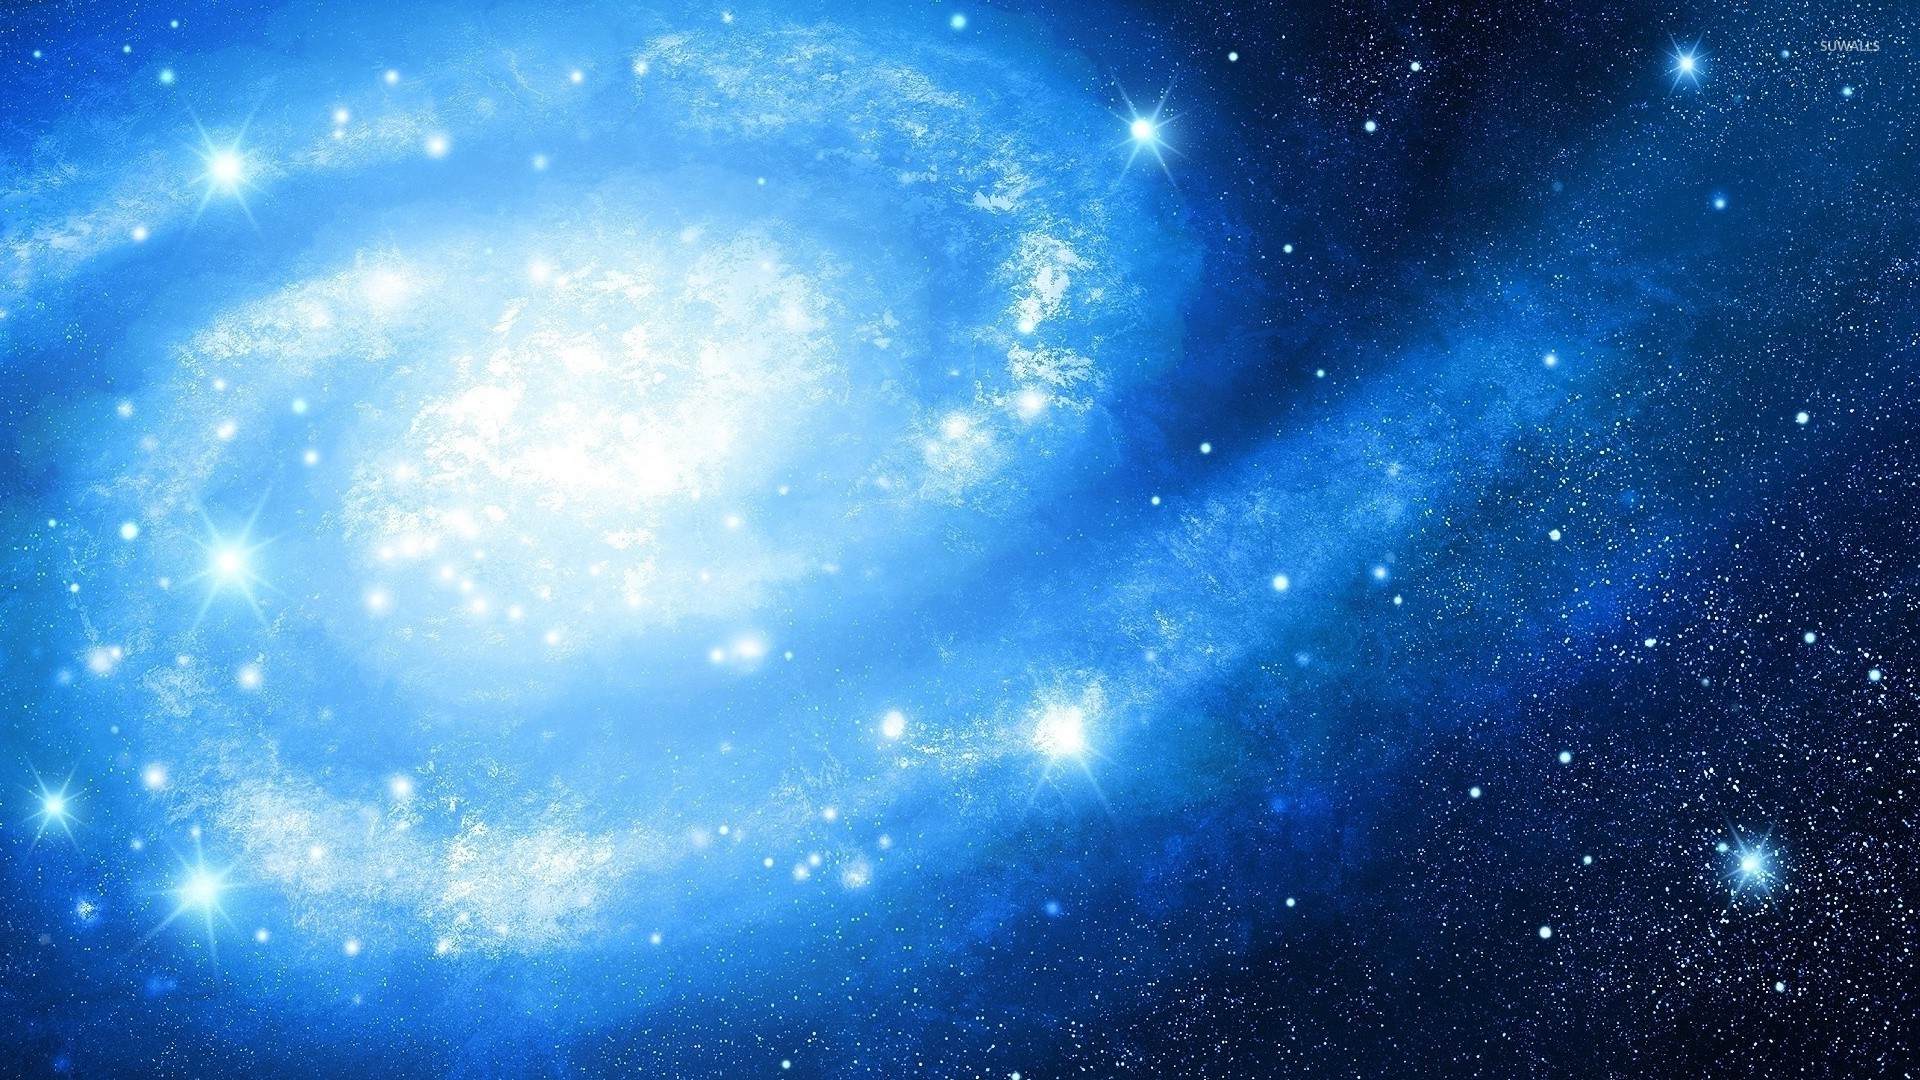 galaxie tapete 1920x1080,himmel,blau,weltraum,atmosphäre,astronomisches objekt